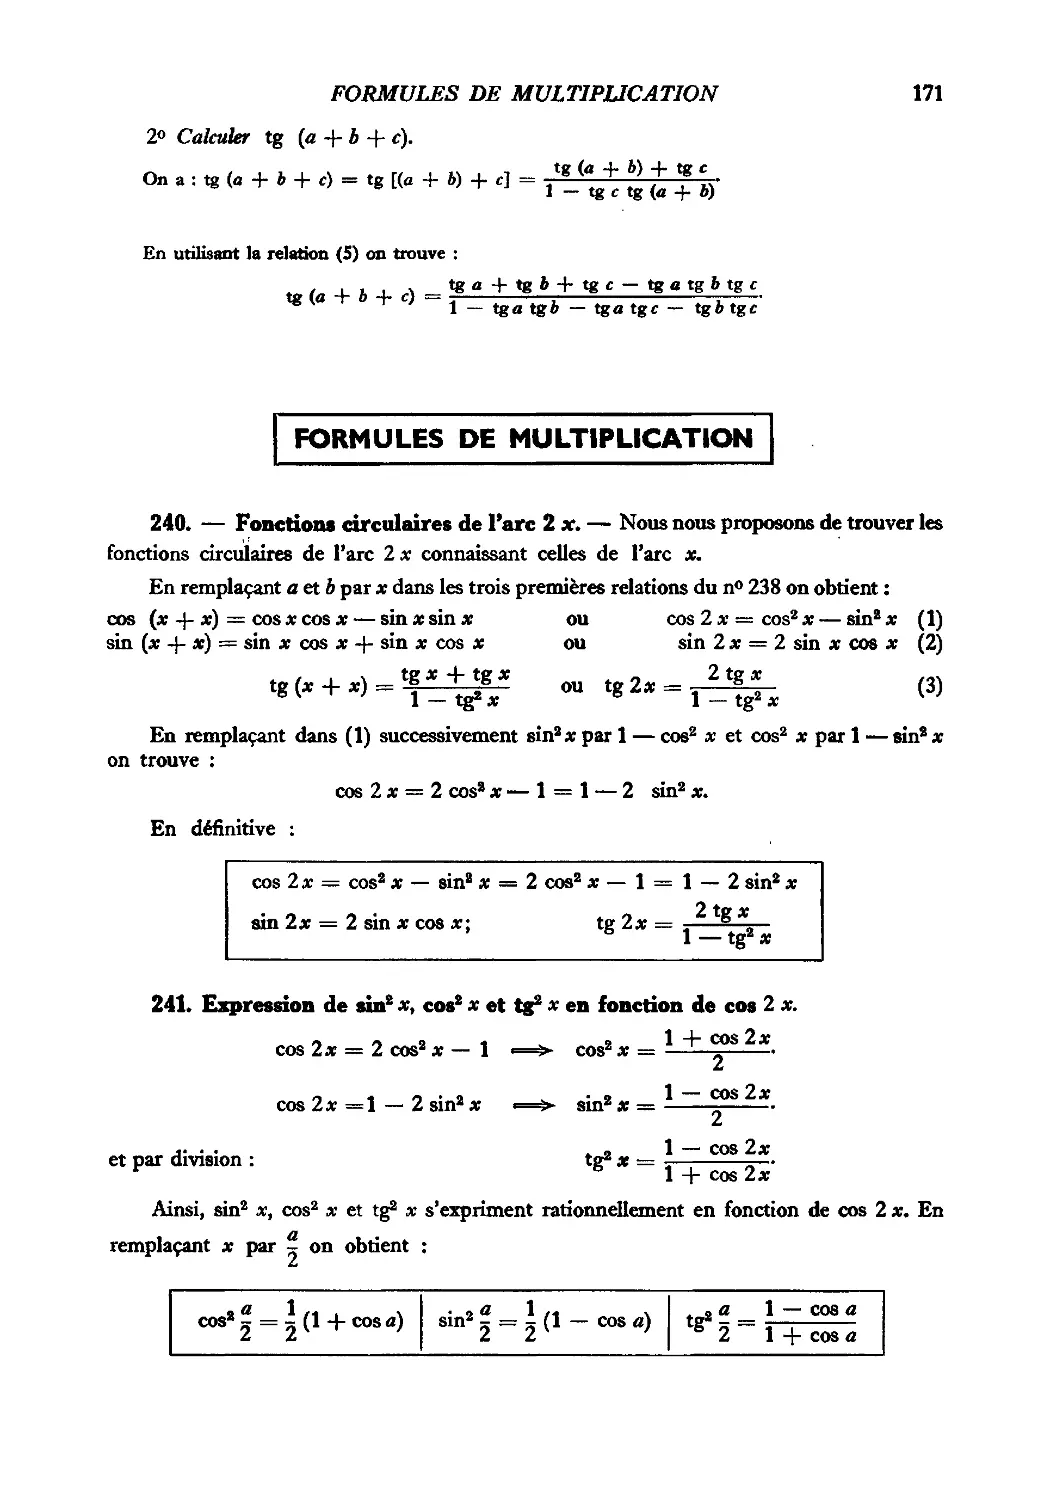 Formules de multiplication
241. Expression de sin²x, cos²x et tg²x en fonction de cos 2x